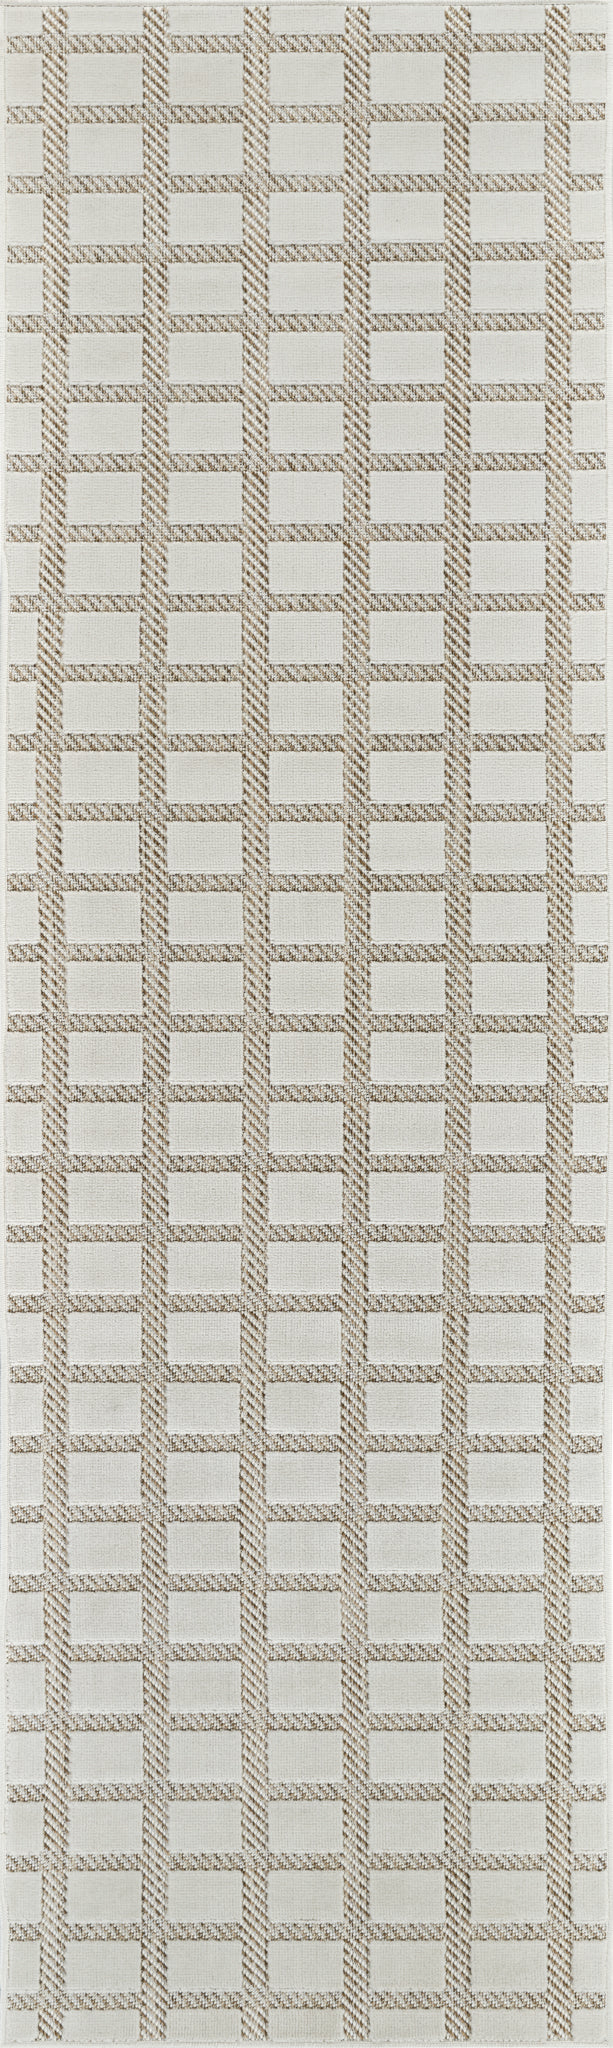 Maise Checkered Modern Beige Rug